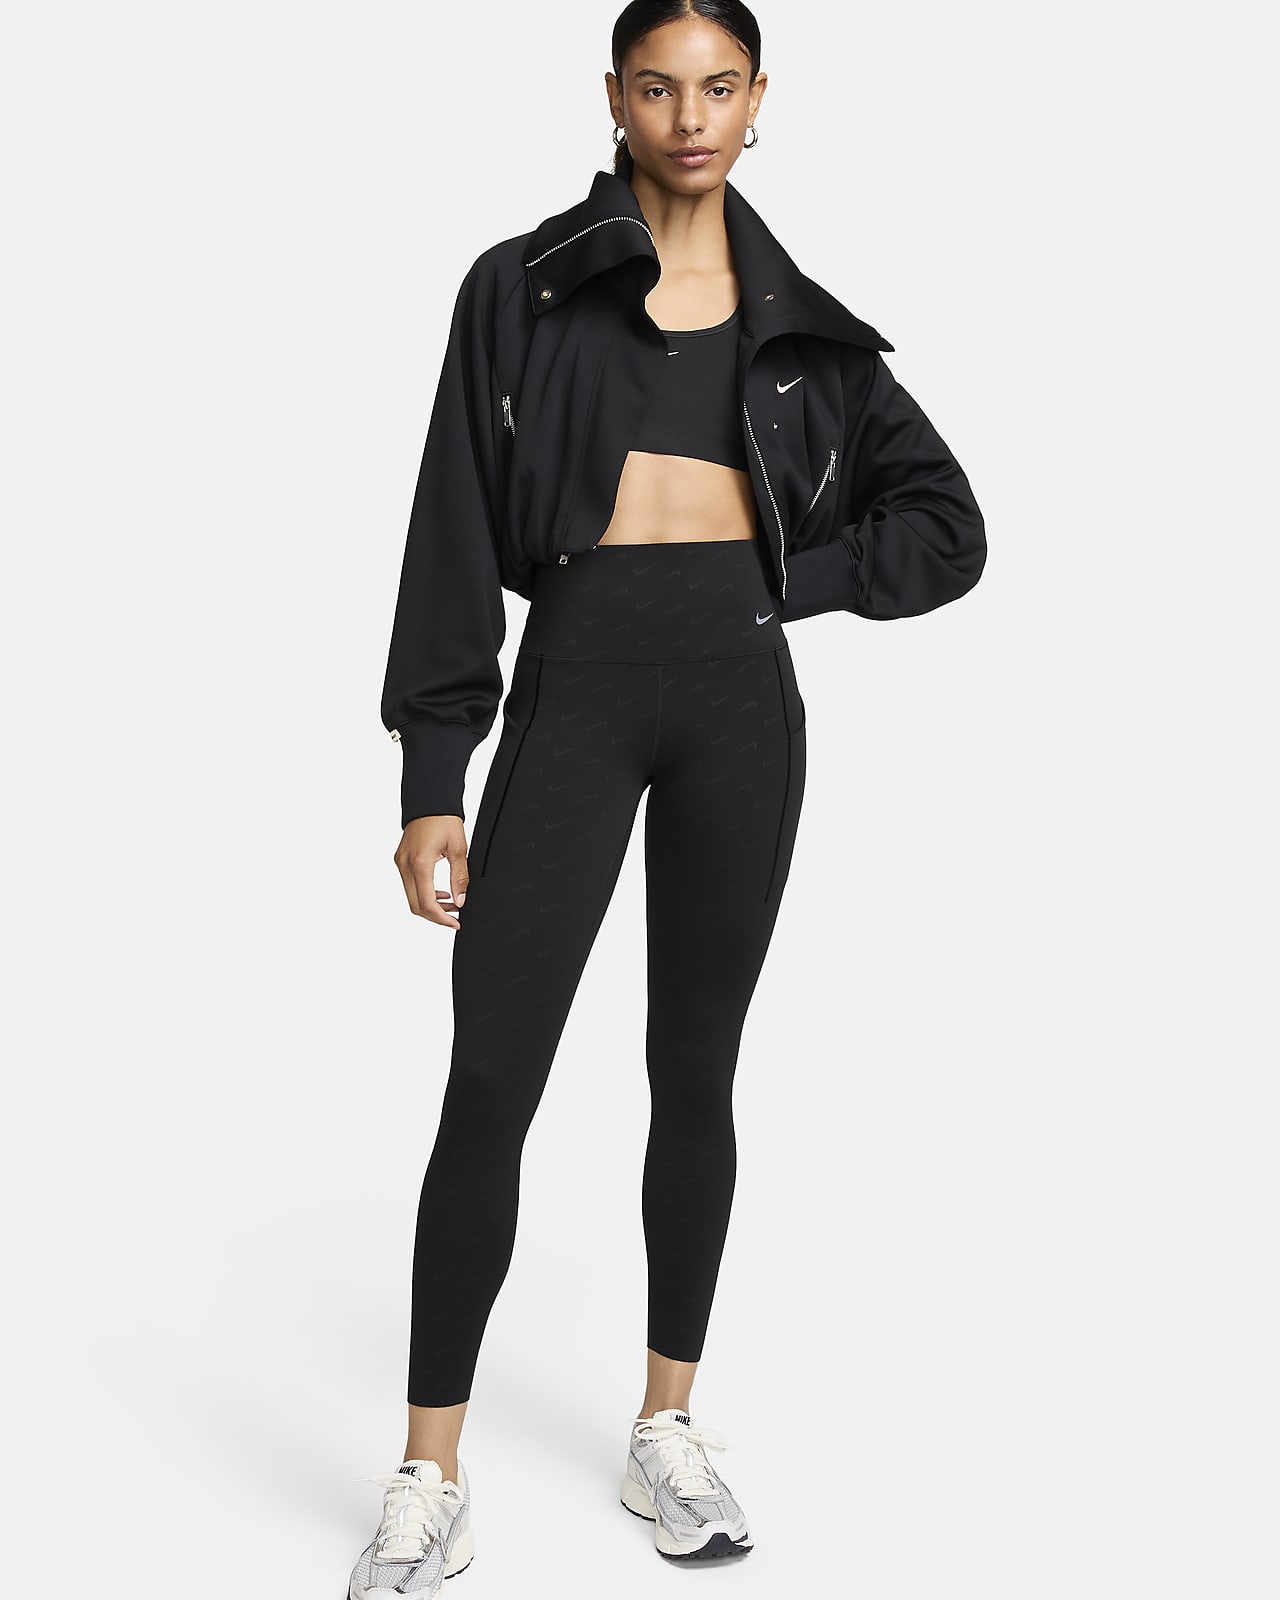 Nike Universa 7/8-leggings længde med medium støtte, høj talje, print og lommer til kvinder